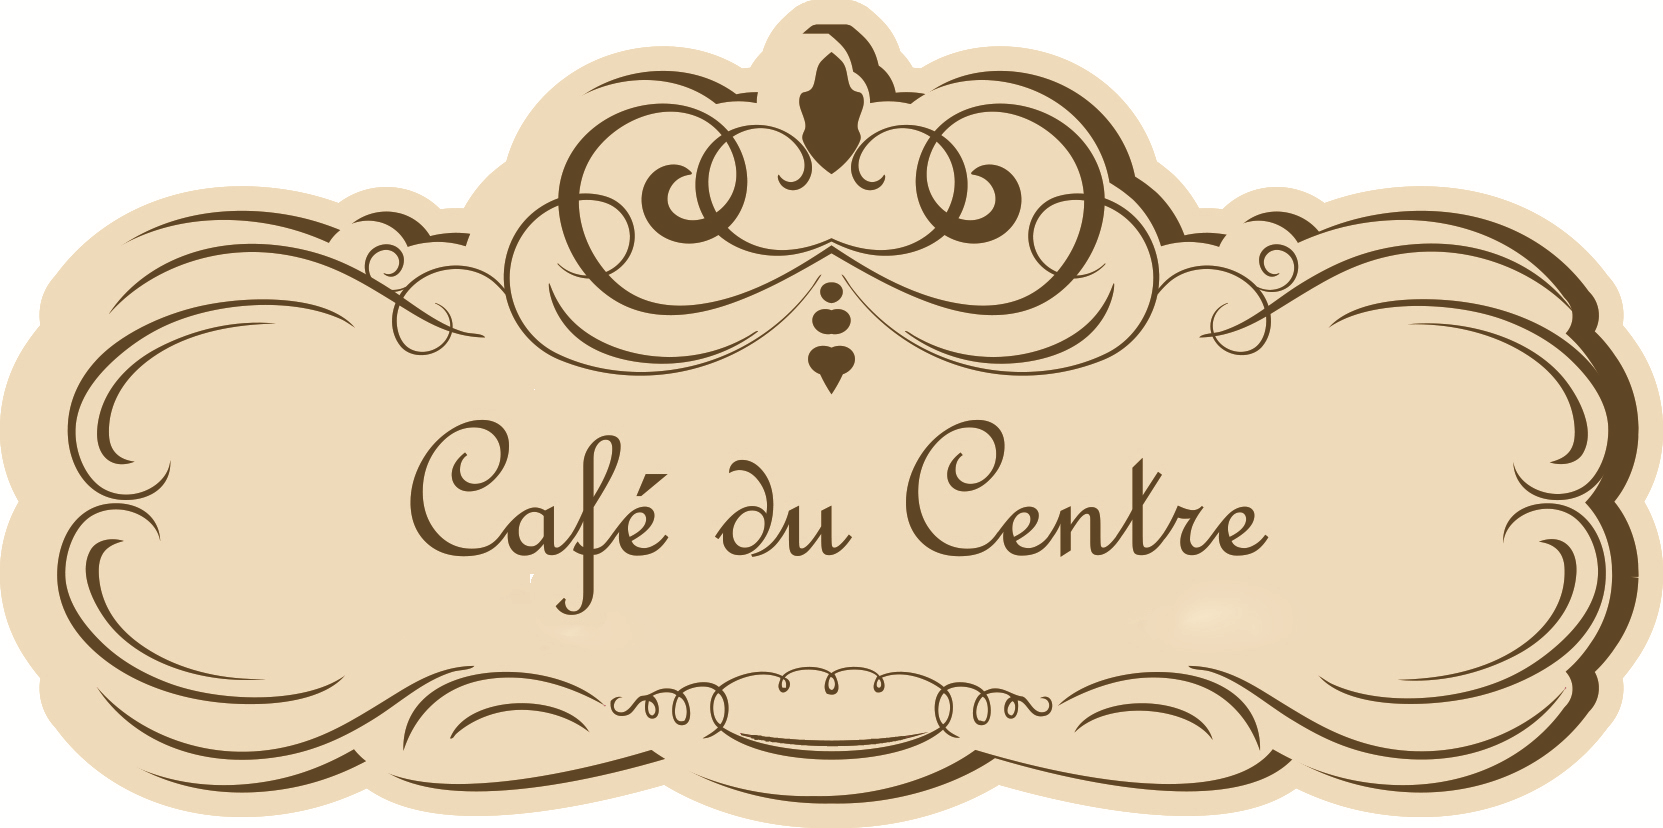 Café Du Centre - Cafeteria E Doceria logo